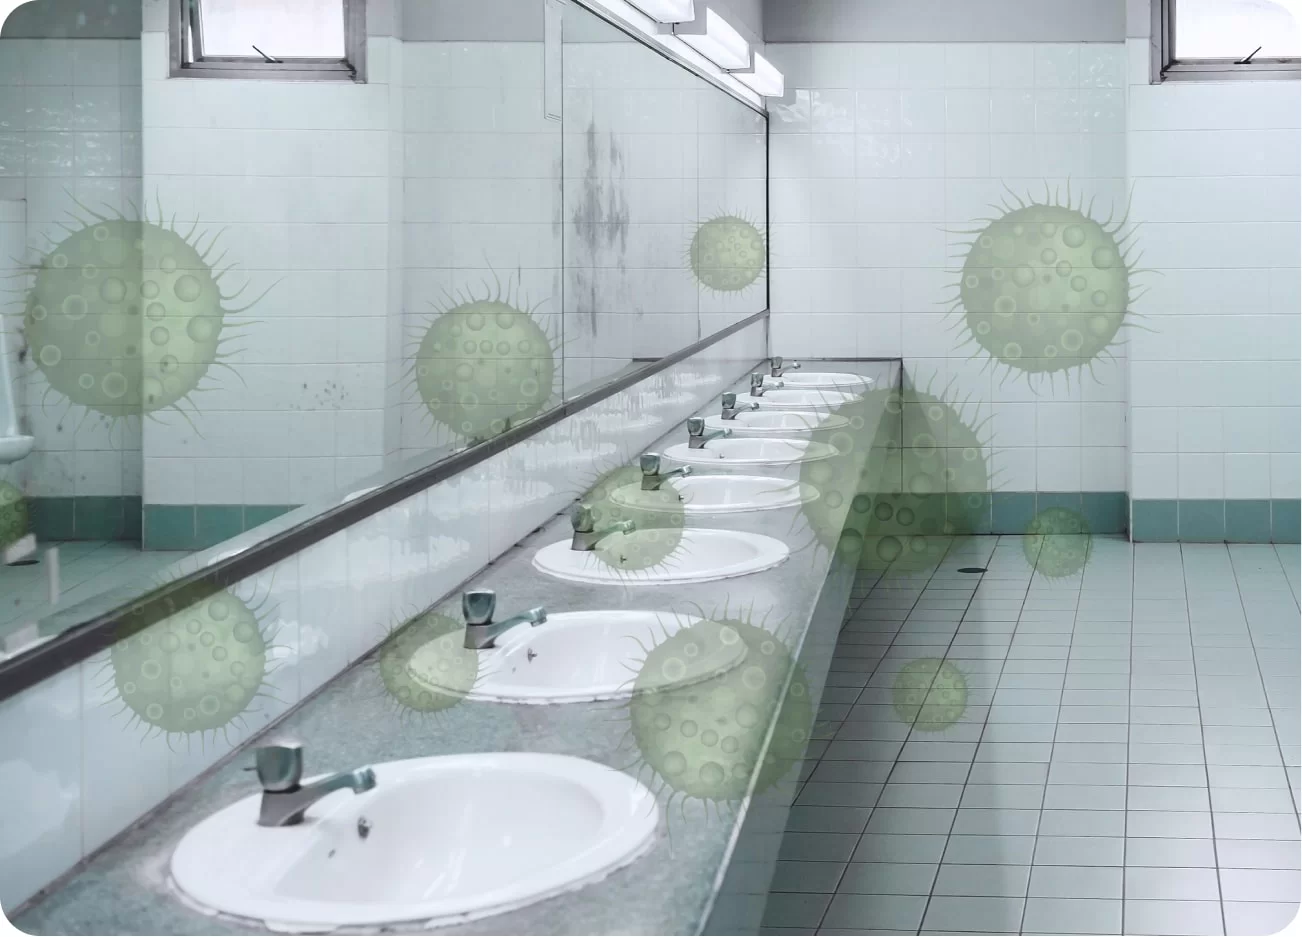 high microbes in washroom